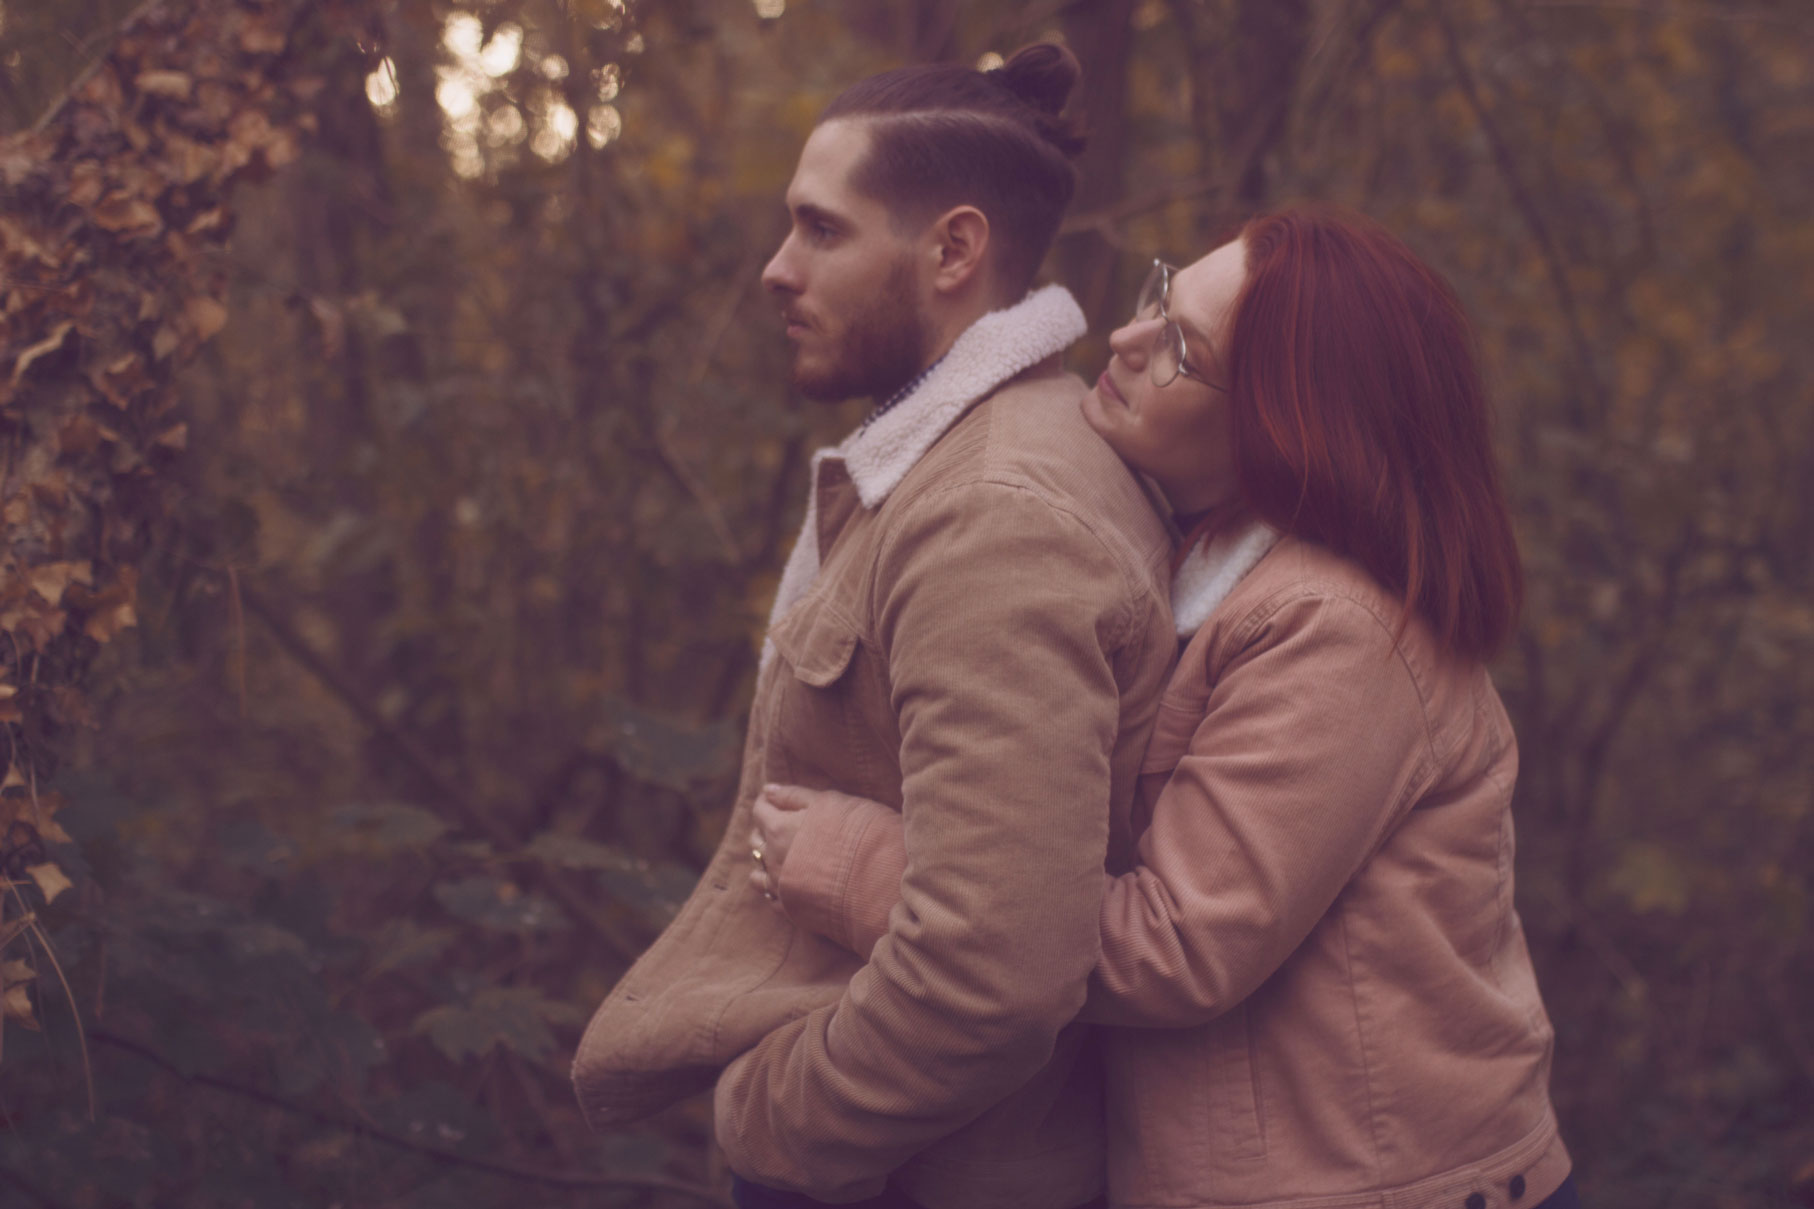 photo d'un couple en automne dans la forêt